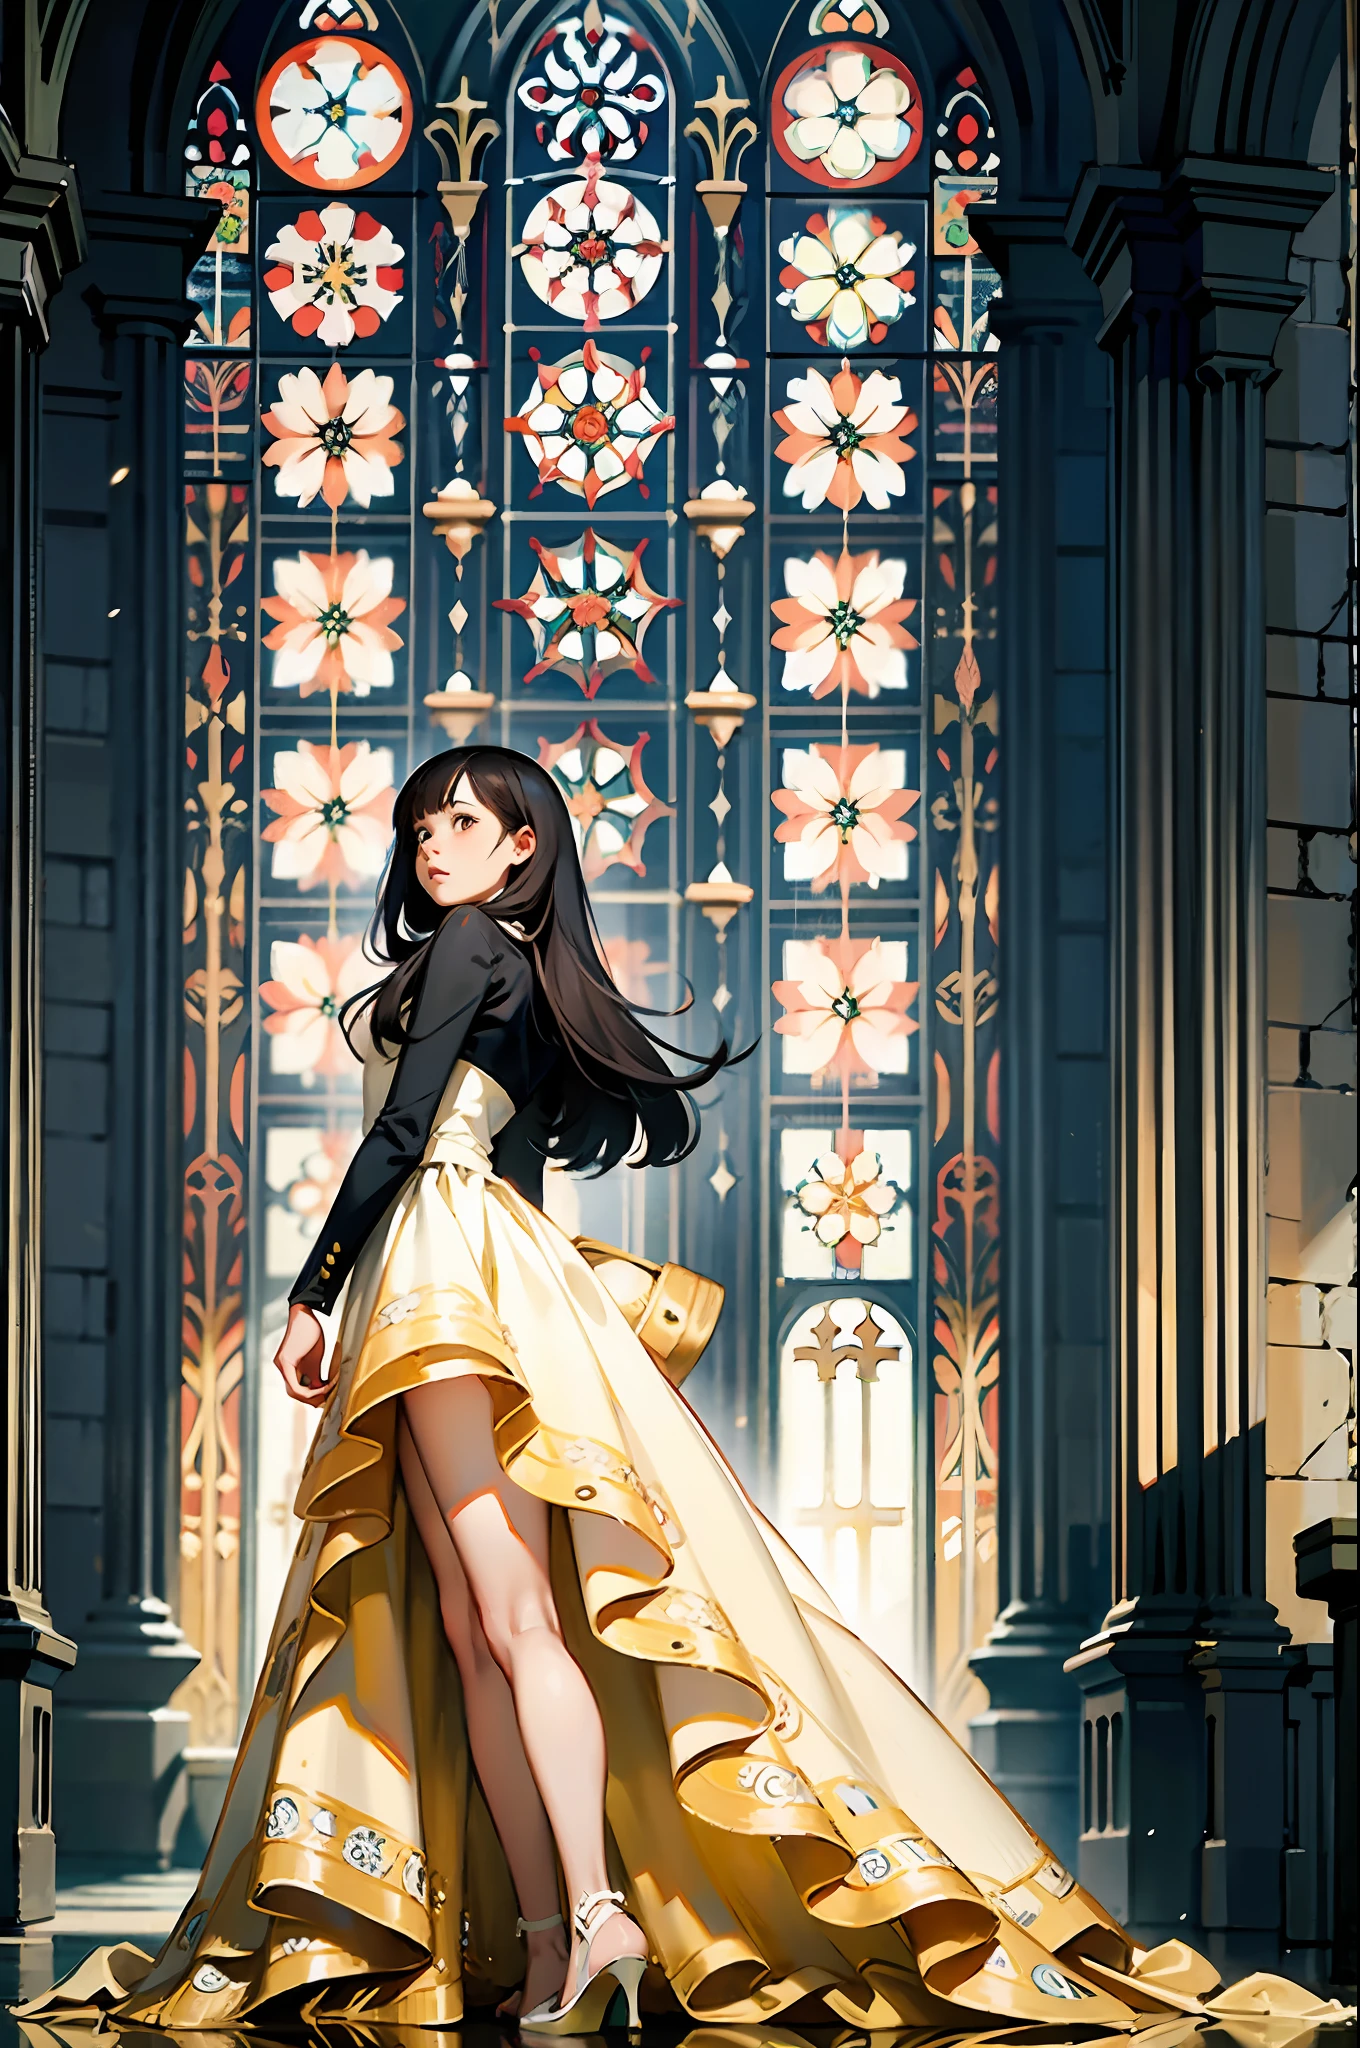 Chica de cuerpo completo con el vestido más largo que le cubre todas las piernas., floral pattern, Dentro de una catedral